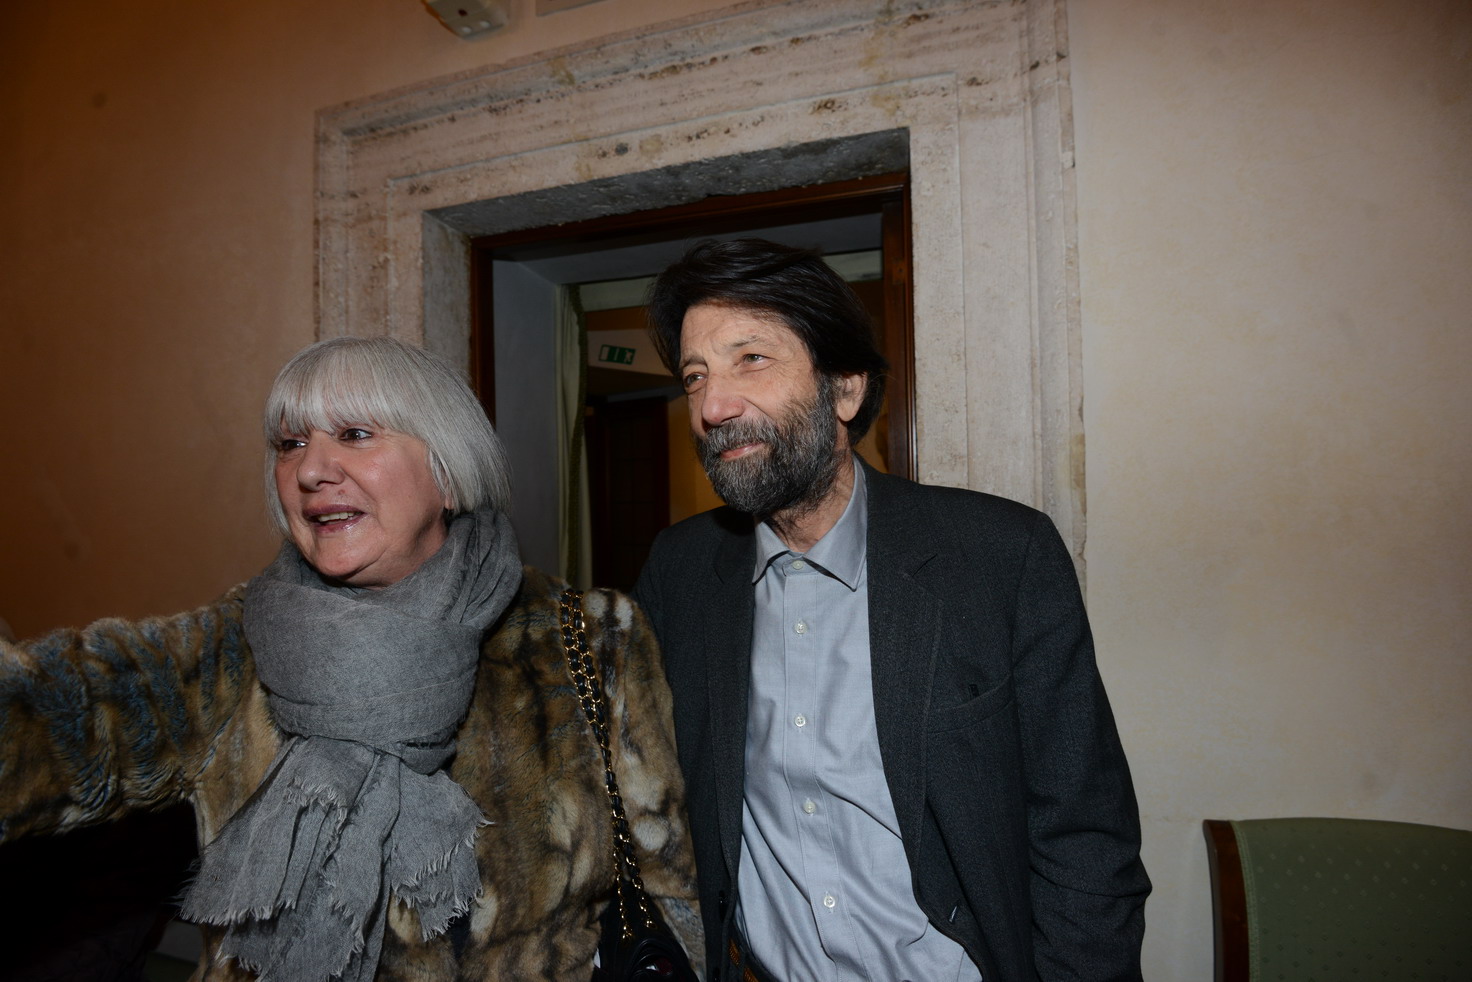 Gabriella Bonacchi, Massimo Cacciari